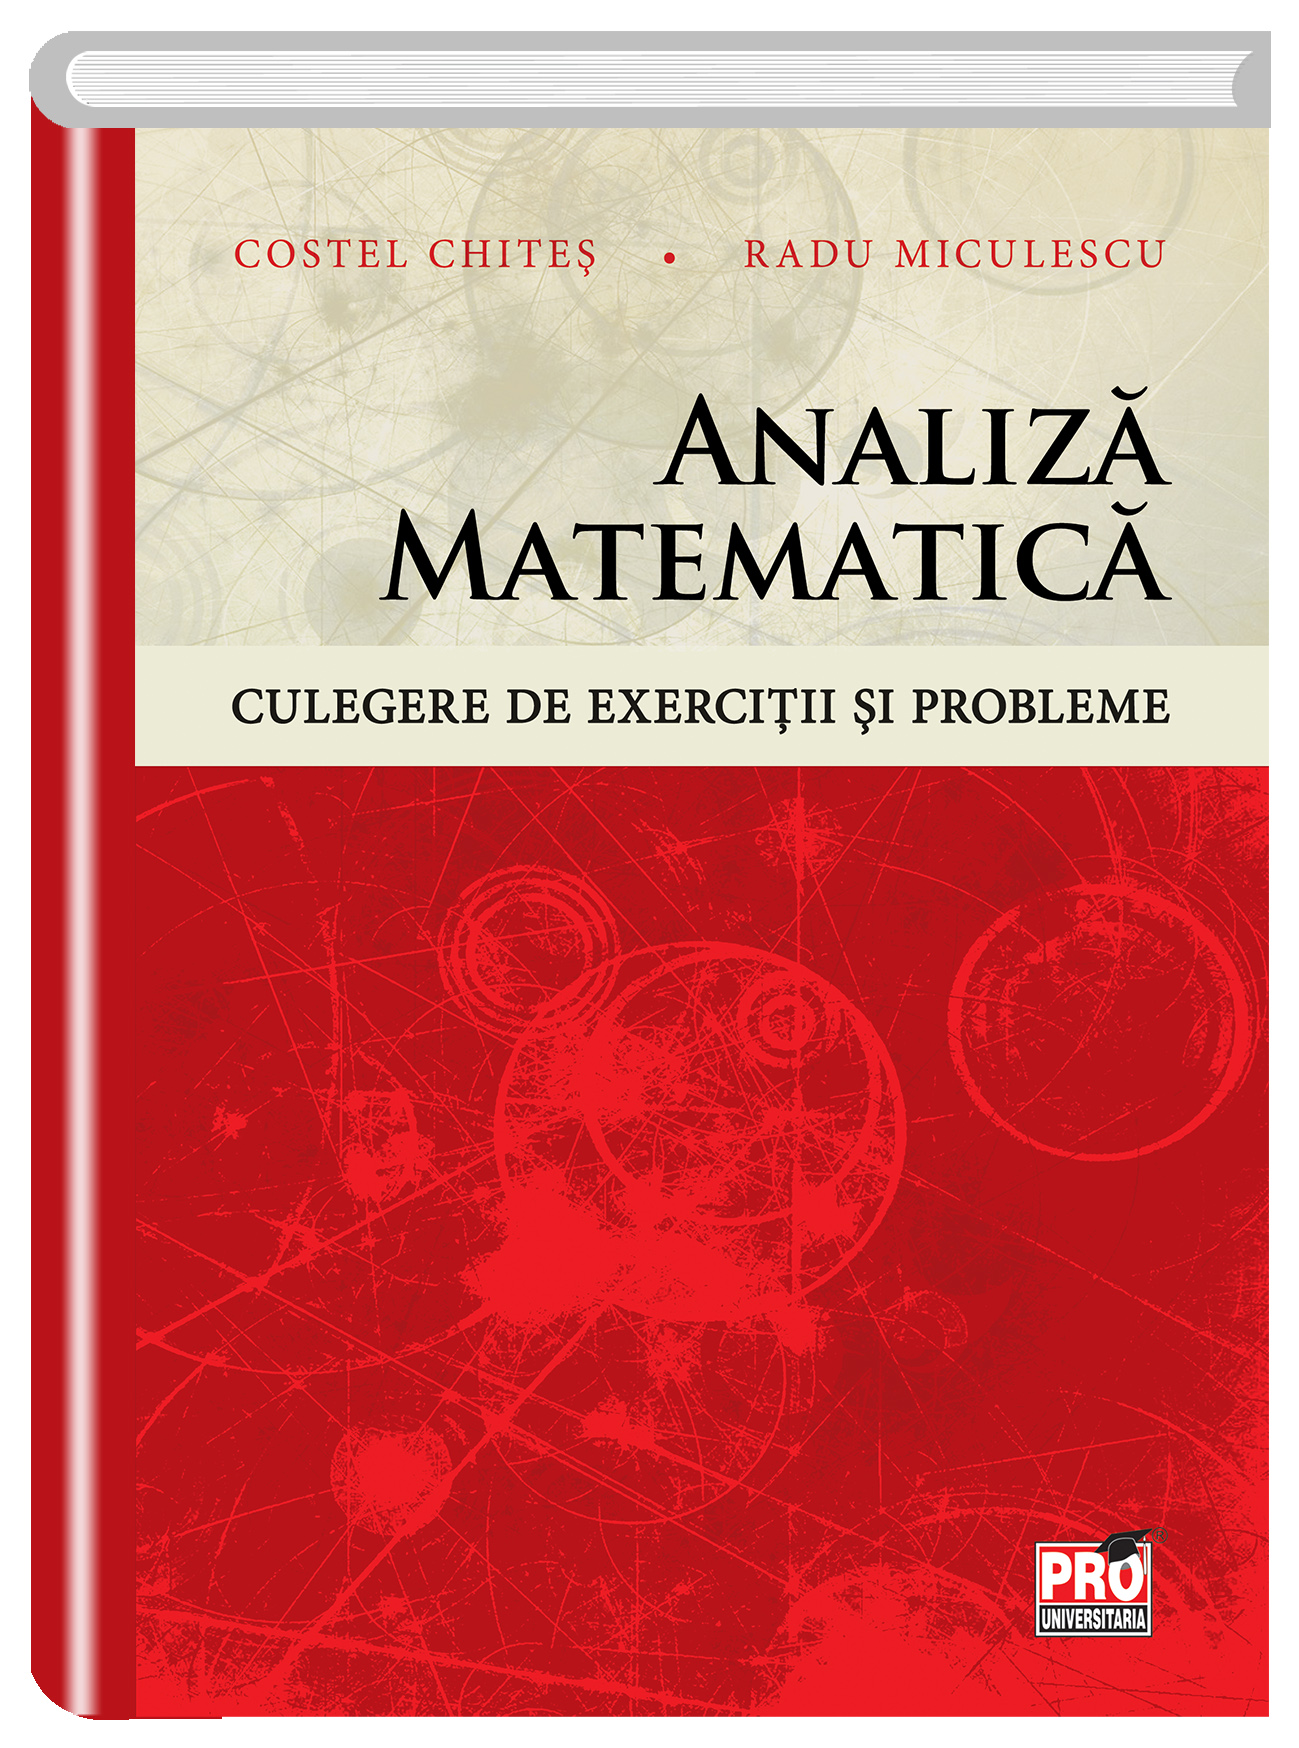 Analiza matematica. Culegere de exercitii si probleme | Costel-Dobre Chites, Radu Miculescu carturesti.ro